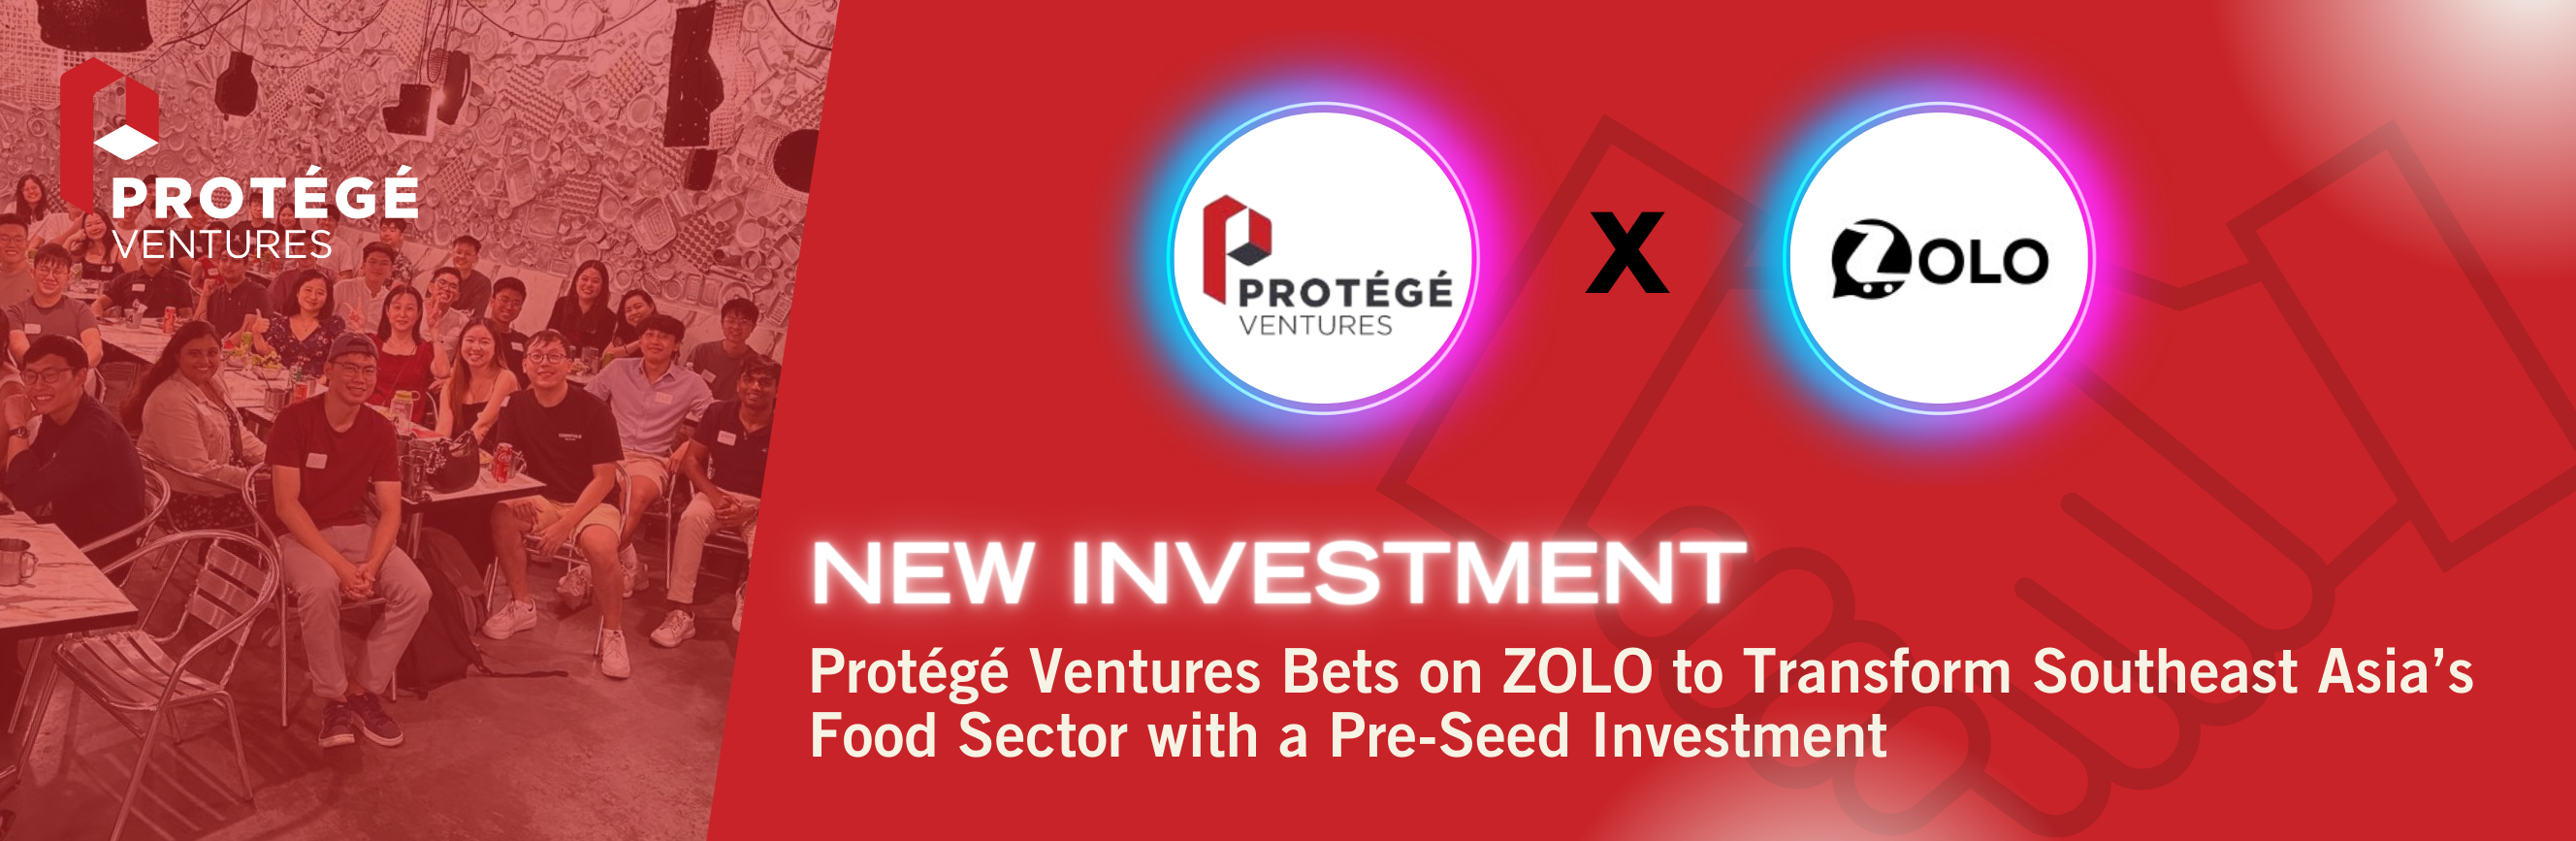 Protégé Ventures Announces New Investment